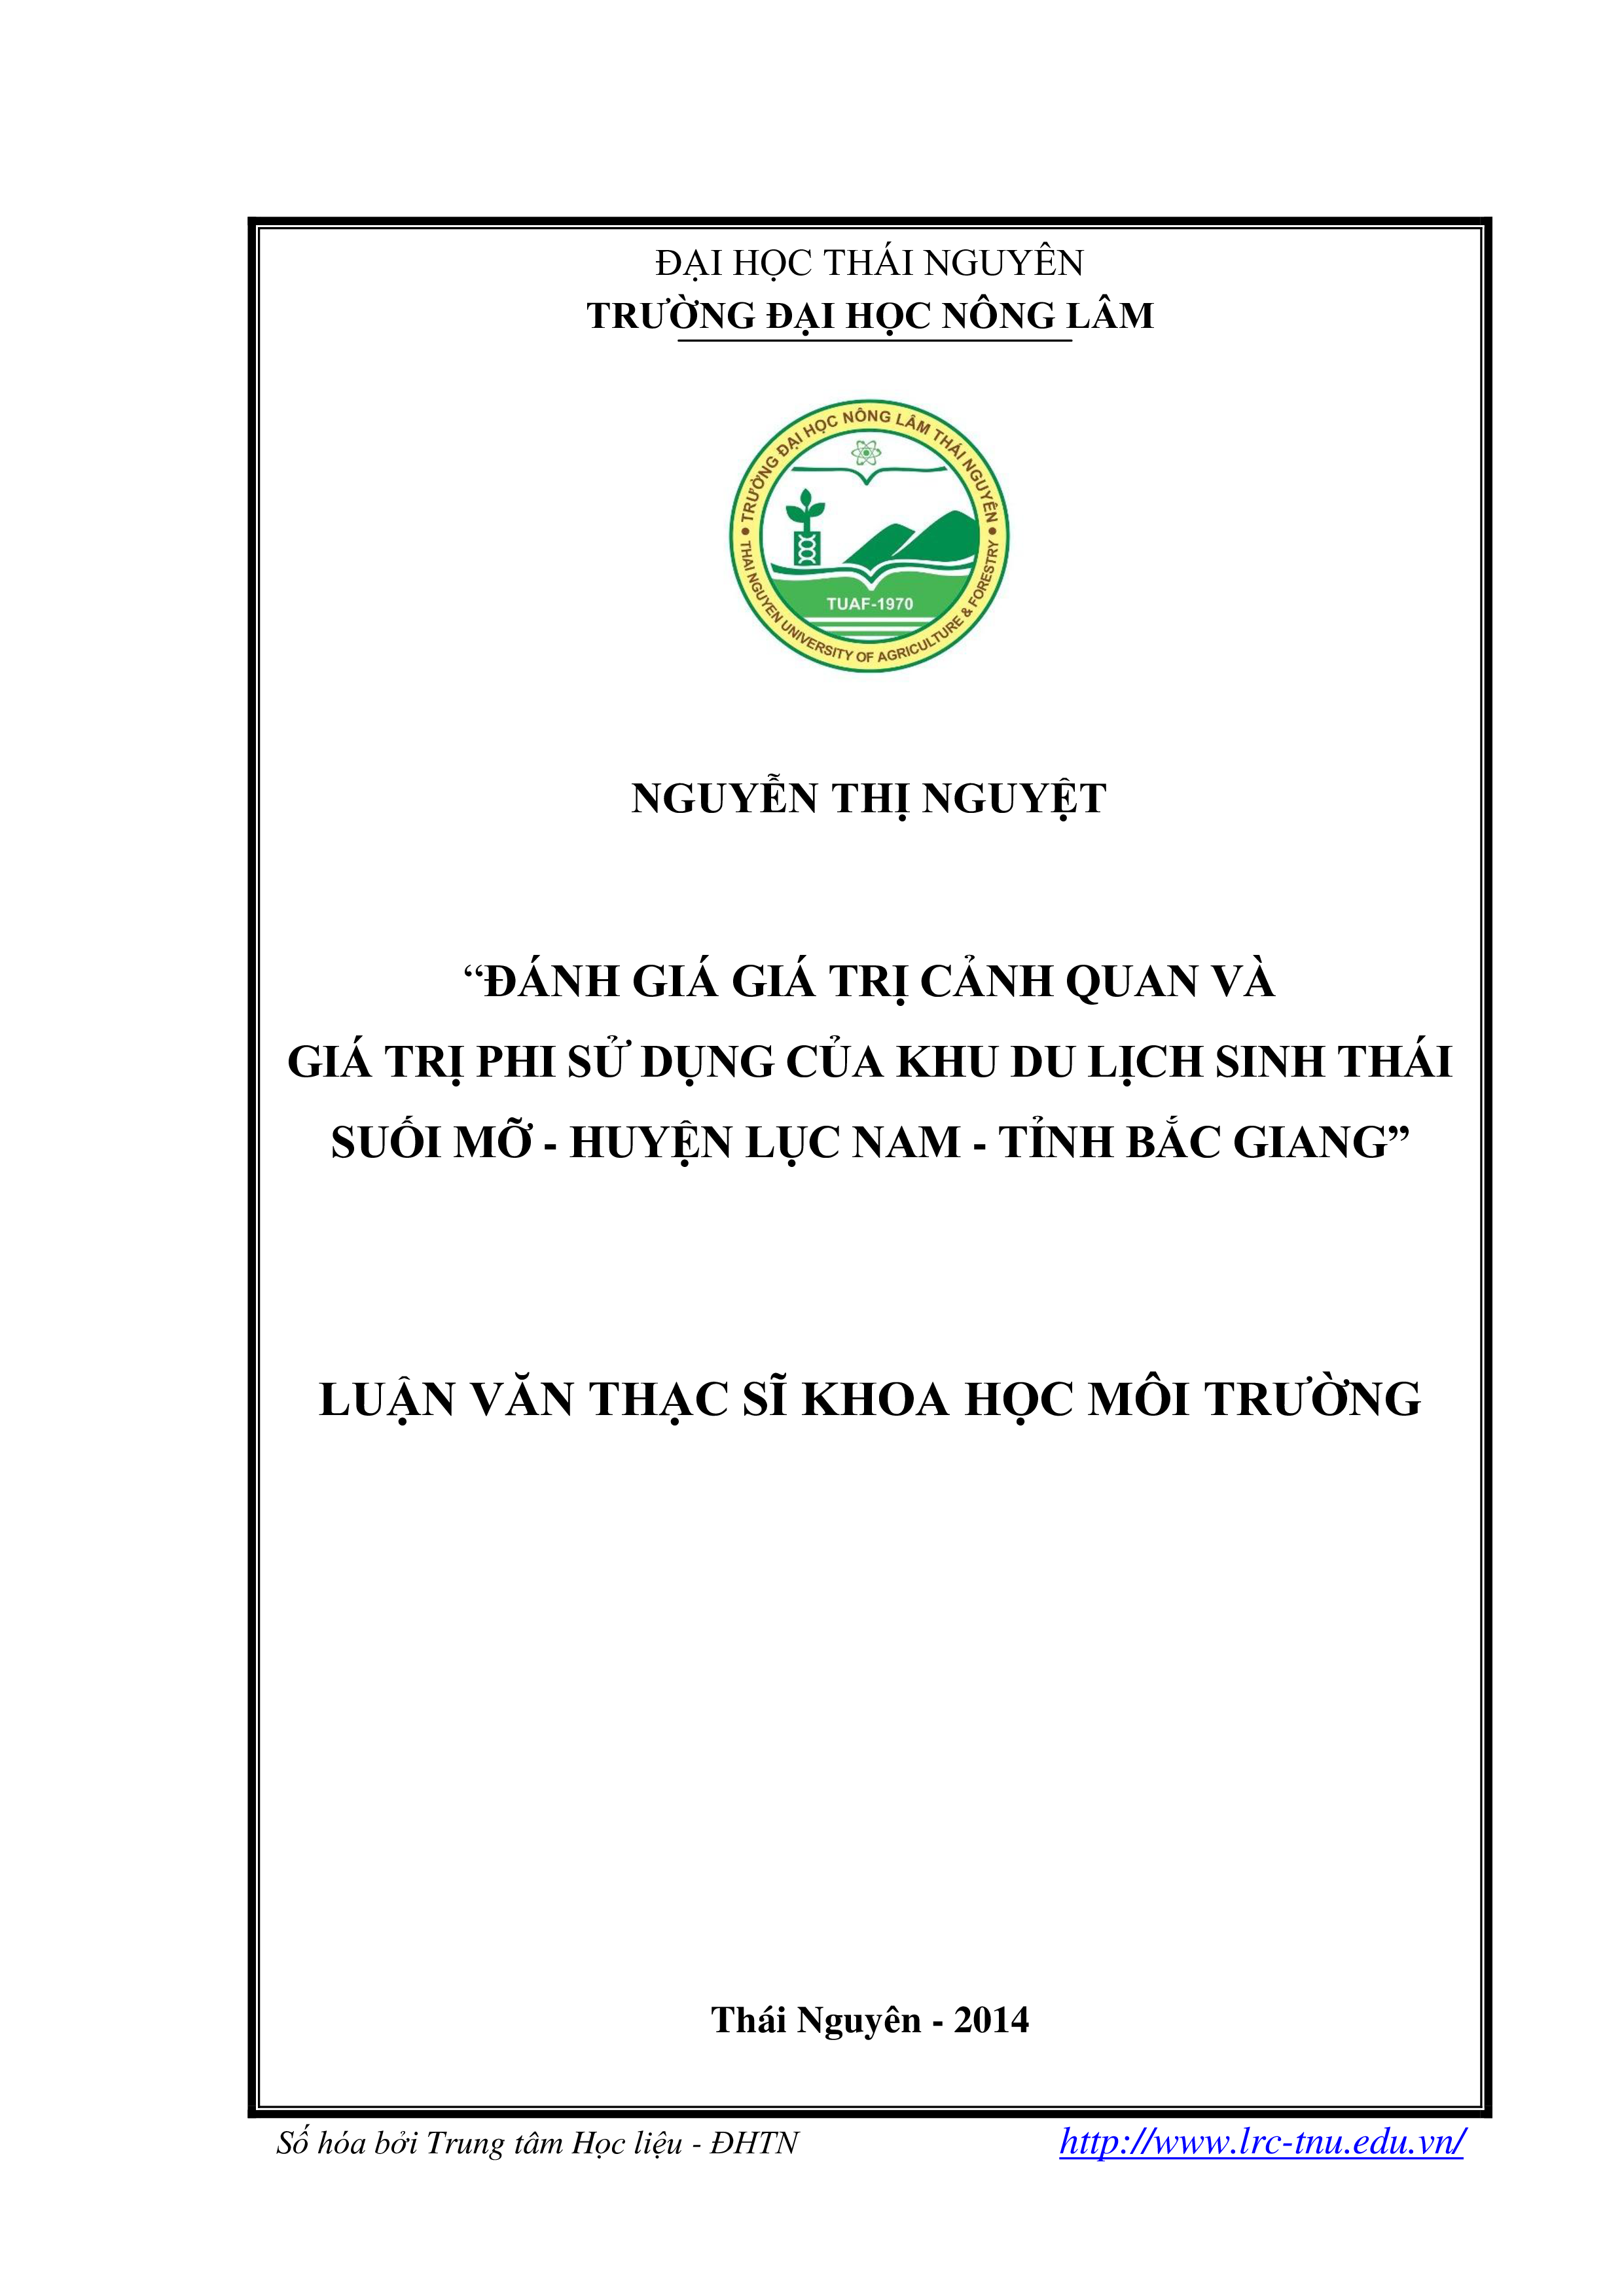 Đánh giá giá trị cảnh quan và giá trị phi sử dụng của Khu Du lịch  sinh thái Suối Mỡ, huyện Lục Nam, tỉnh Bắc Giang